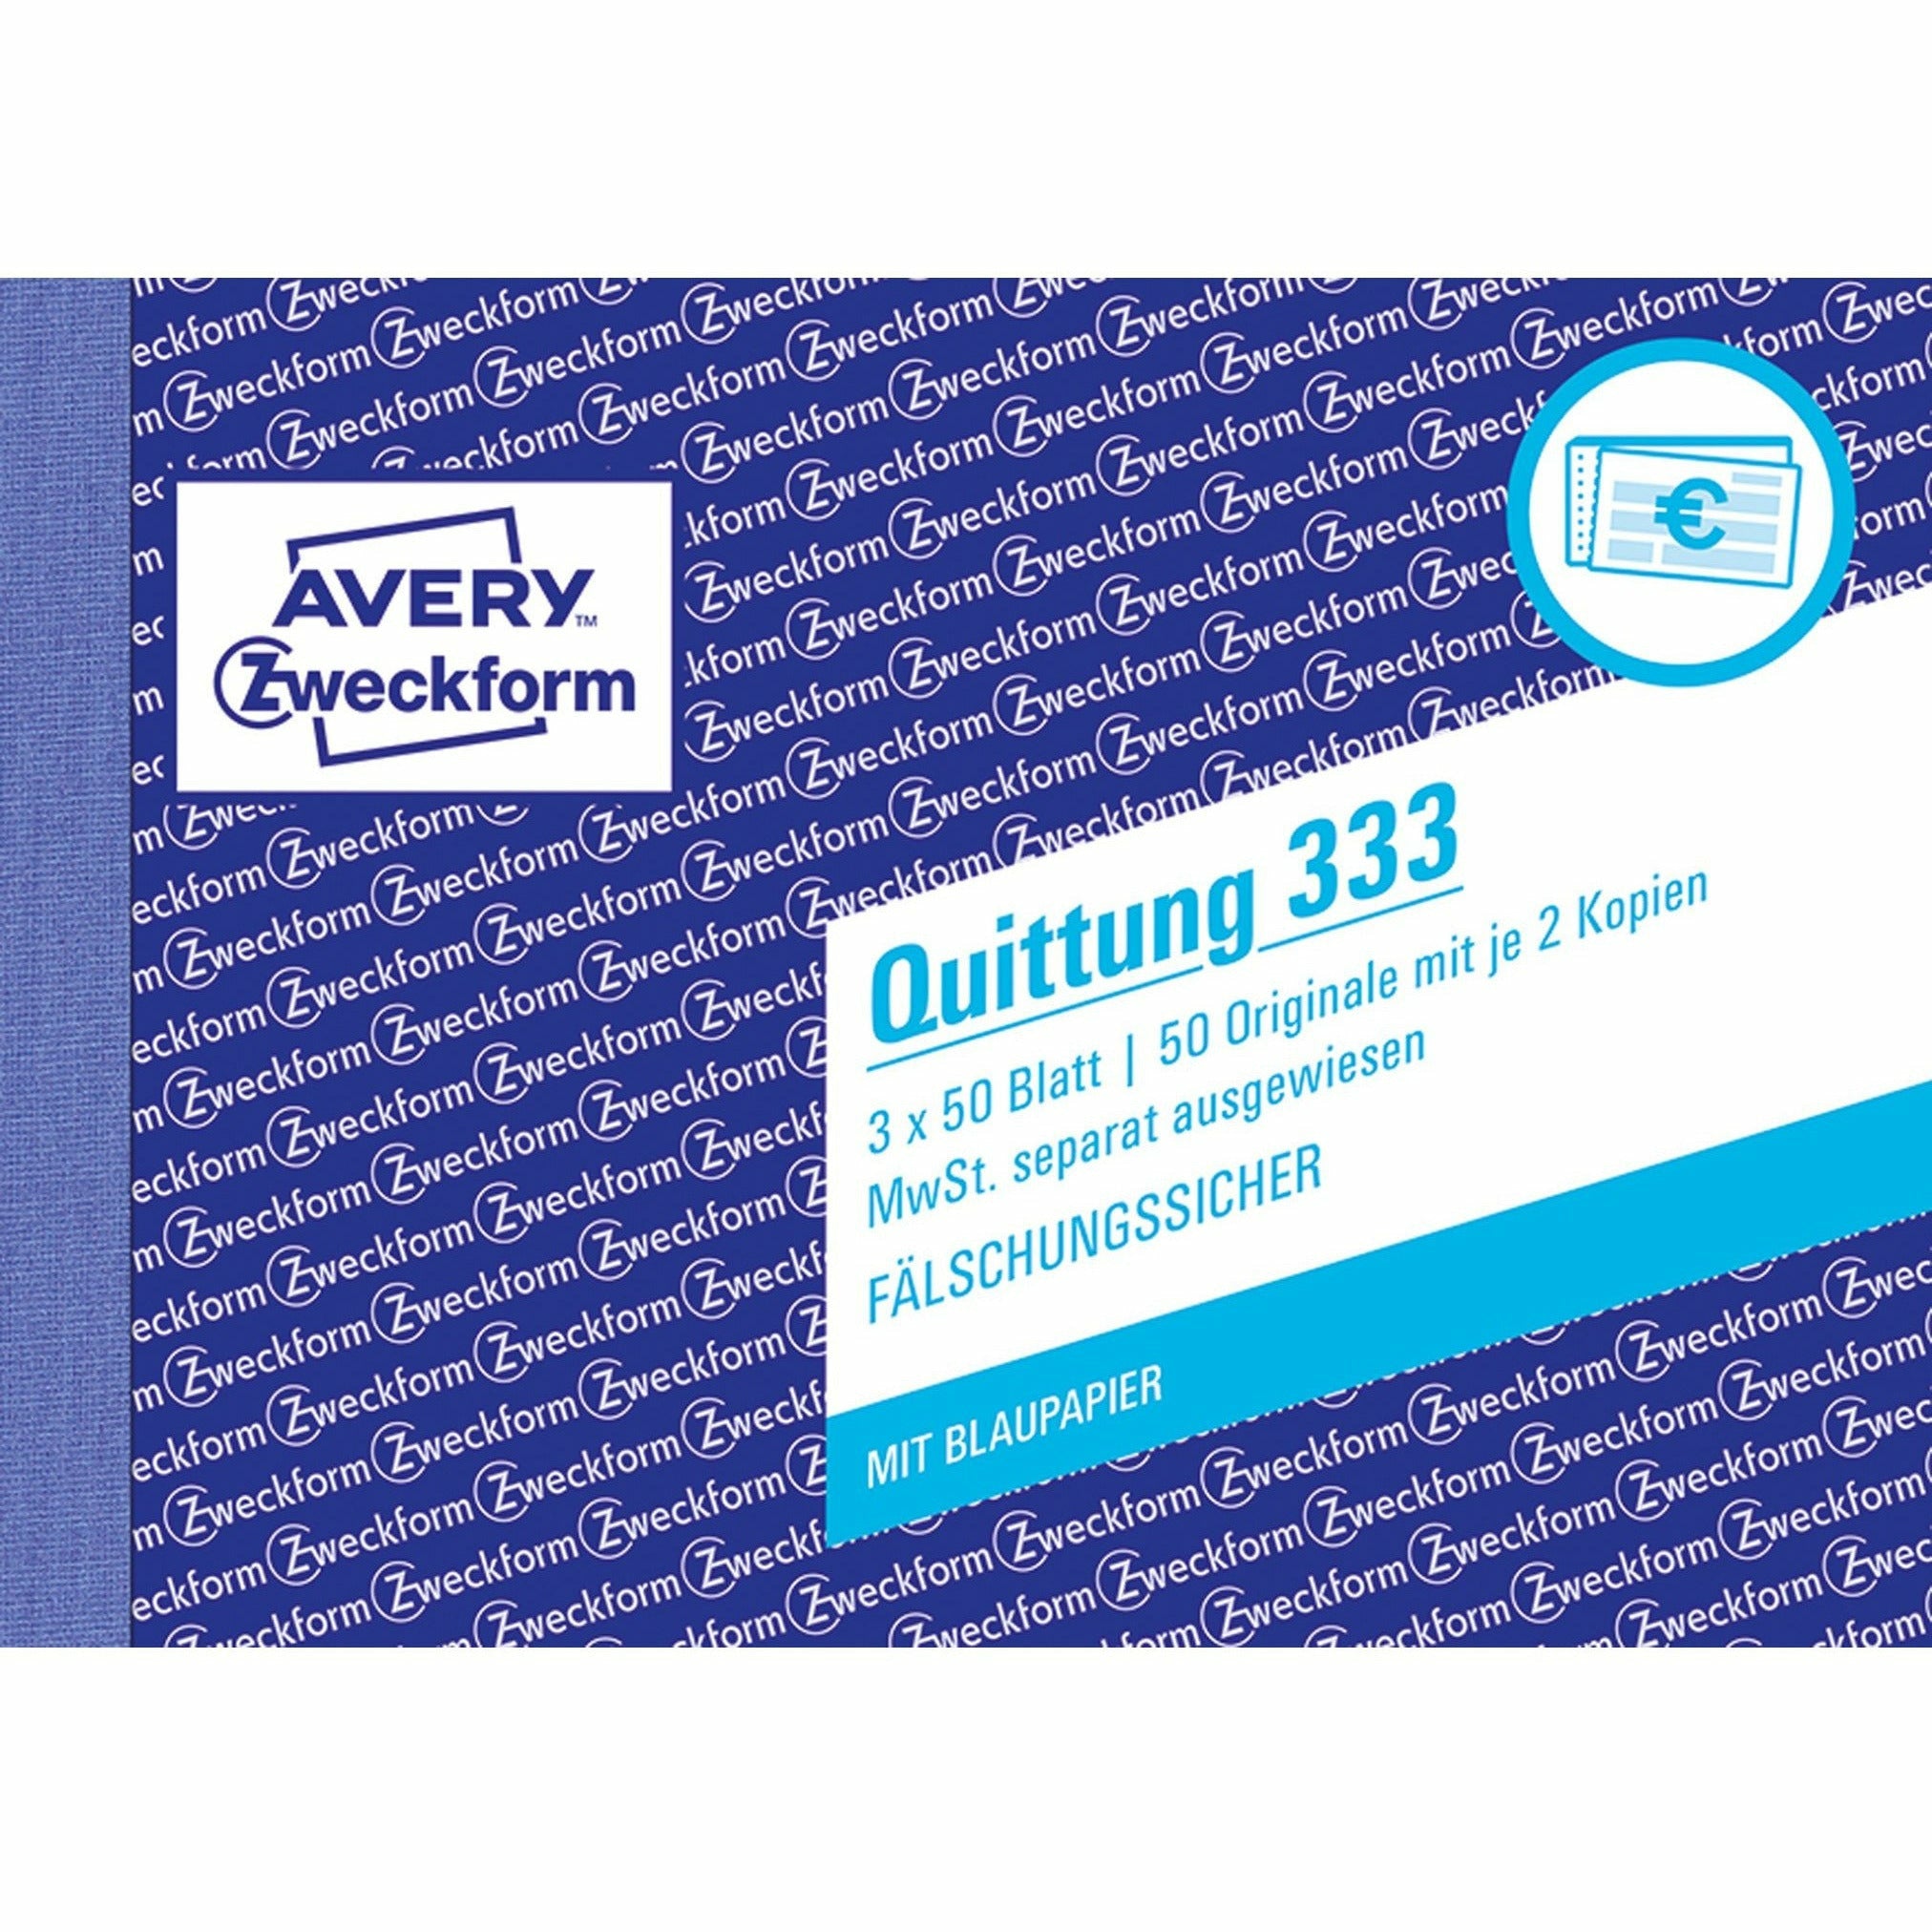 Avery-Zweckform | Quittung MwSt. separat ausgewiesen | 333